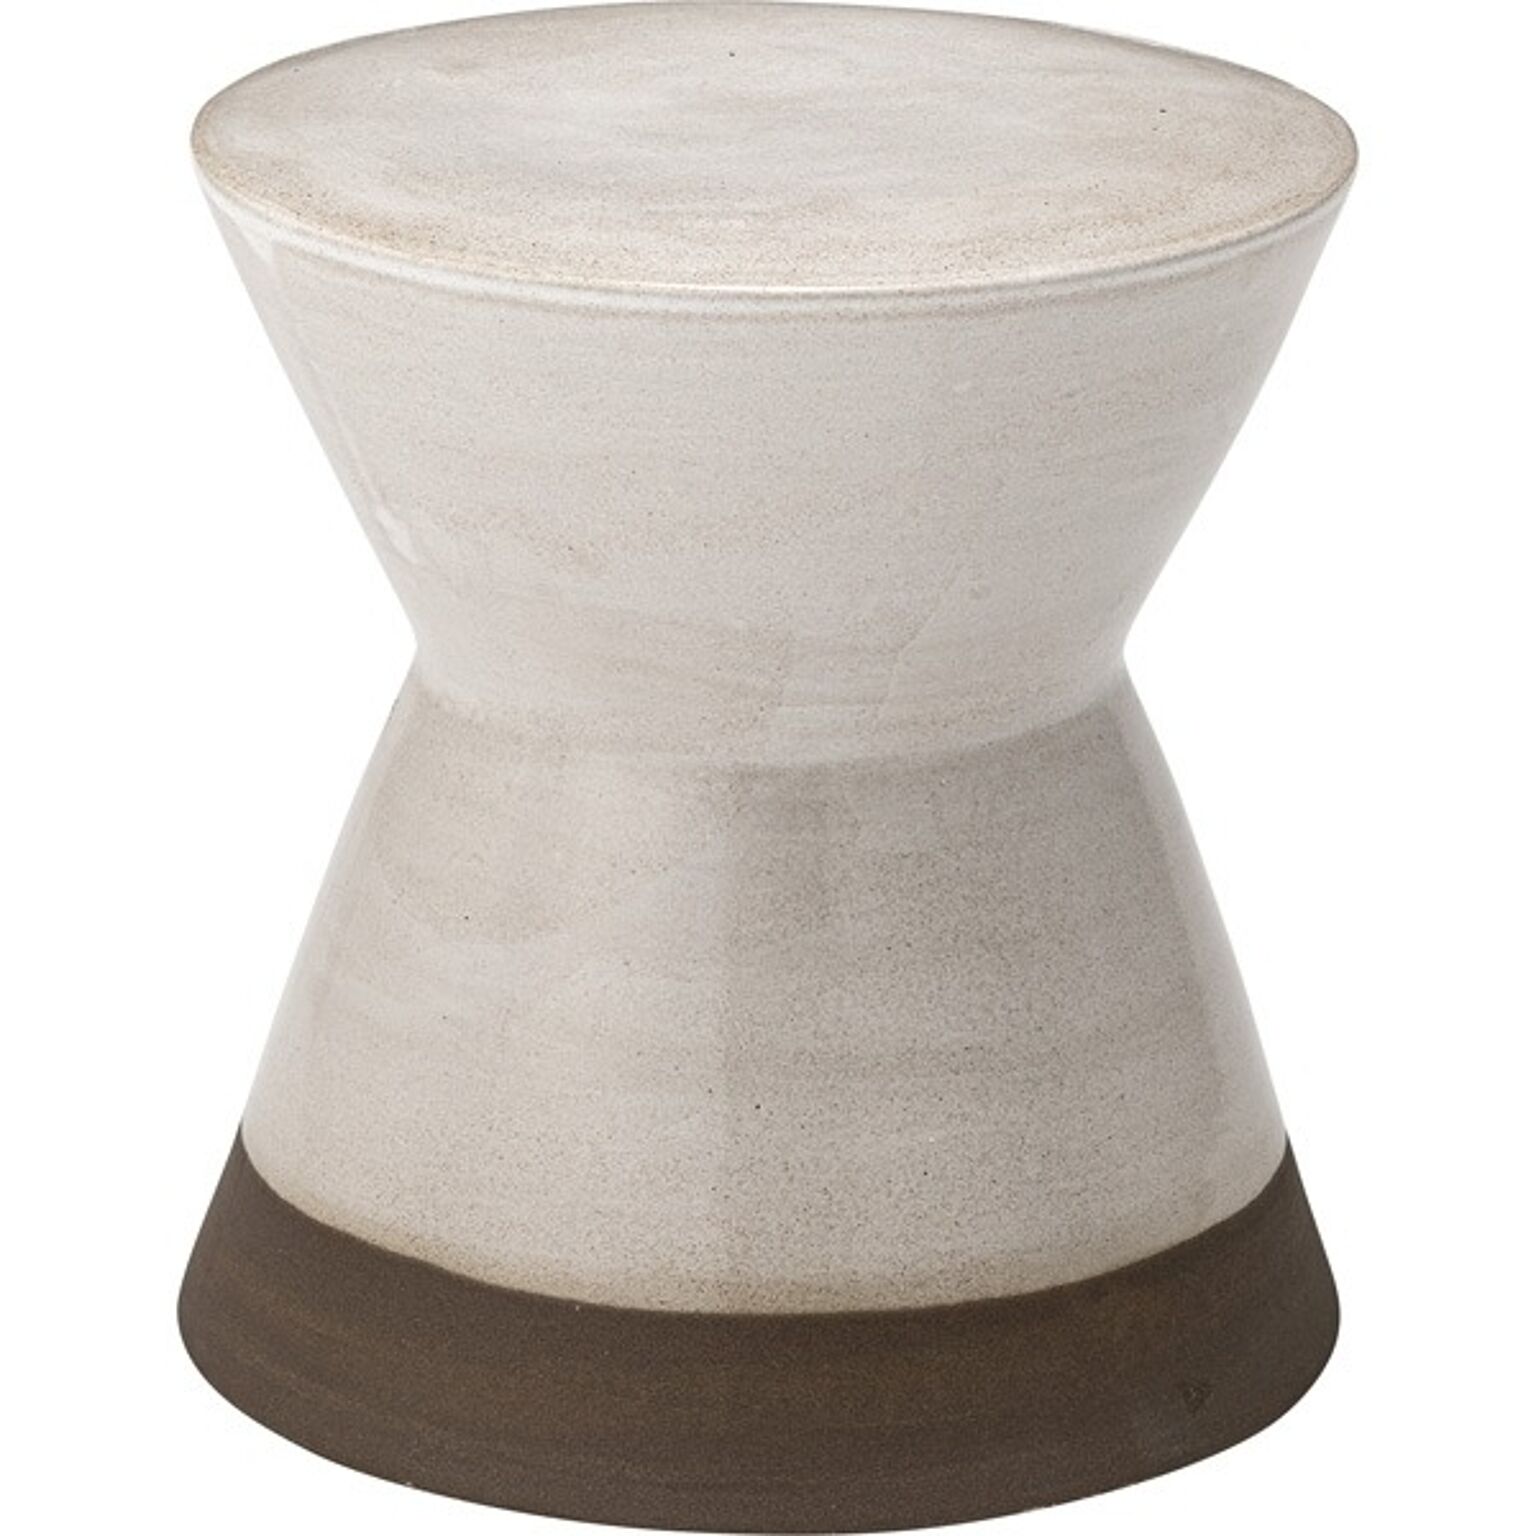 東谷 陶器製 オットマン スツール サイドテーブル兼用 直径30×高さ31cm